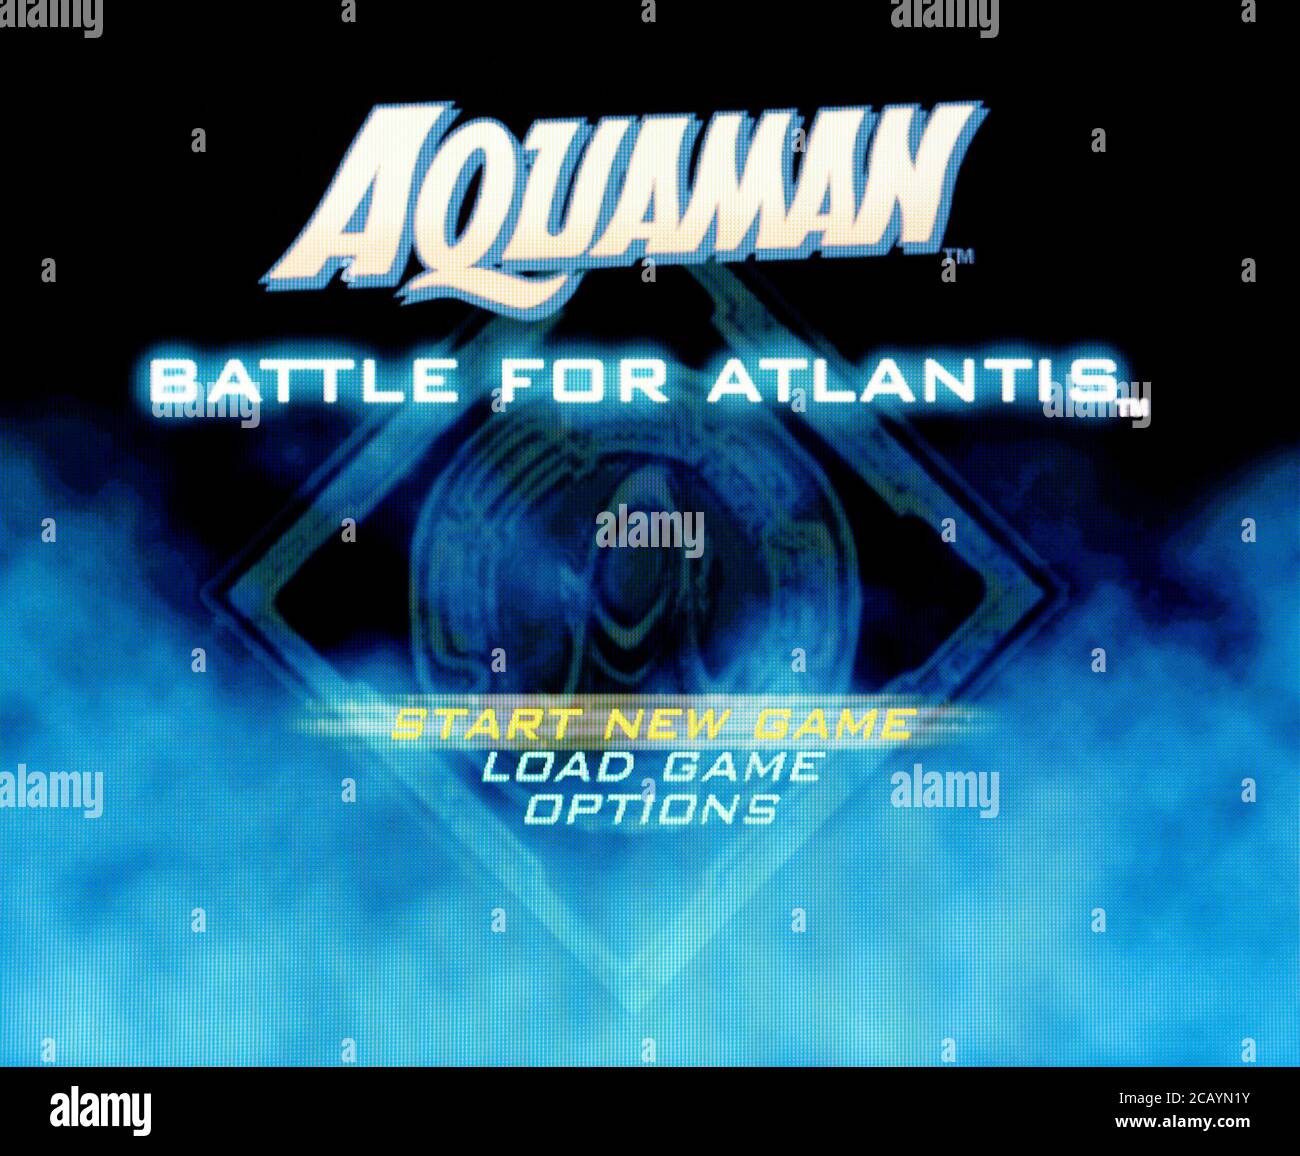 aquaman battle for atlantis gamecube